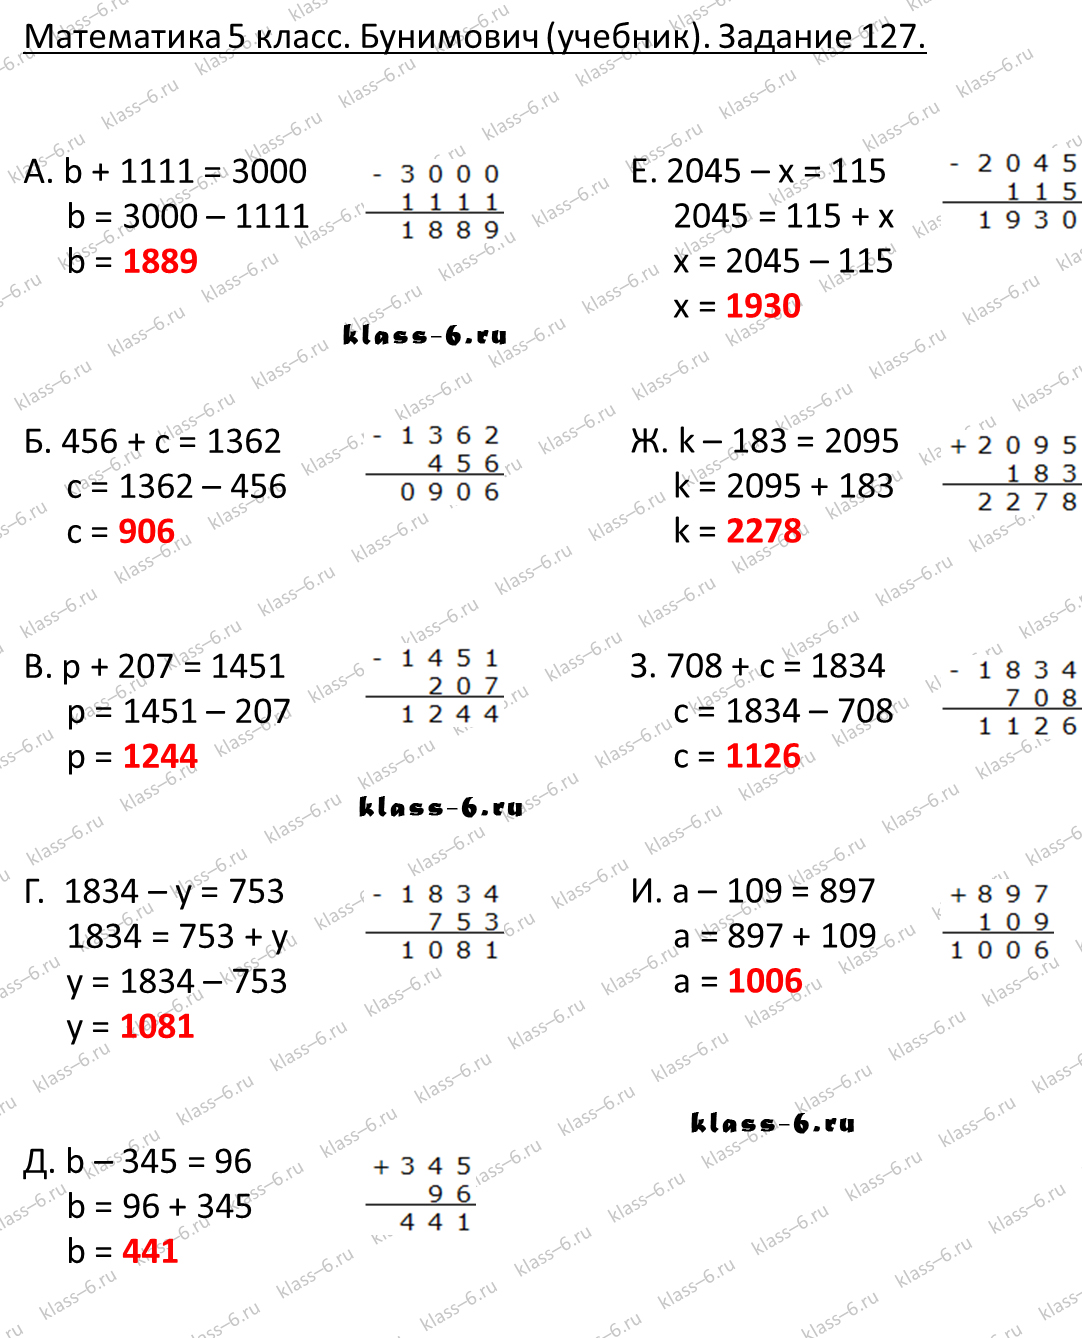 решебник и гдз по математике учебник Бунимович 5 класс задание 127